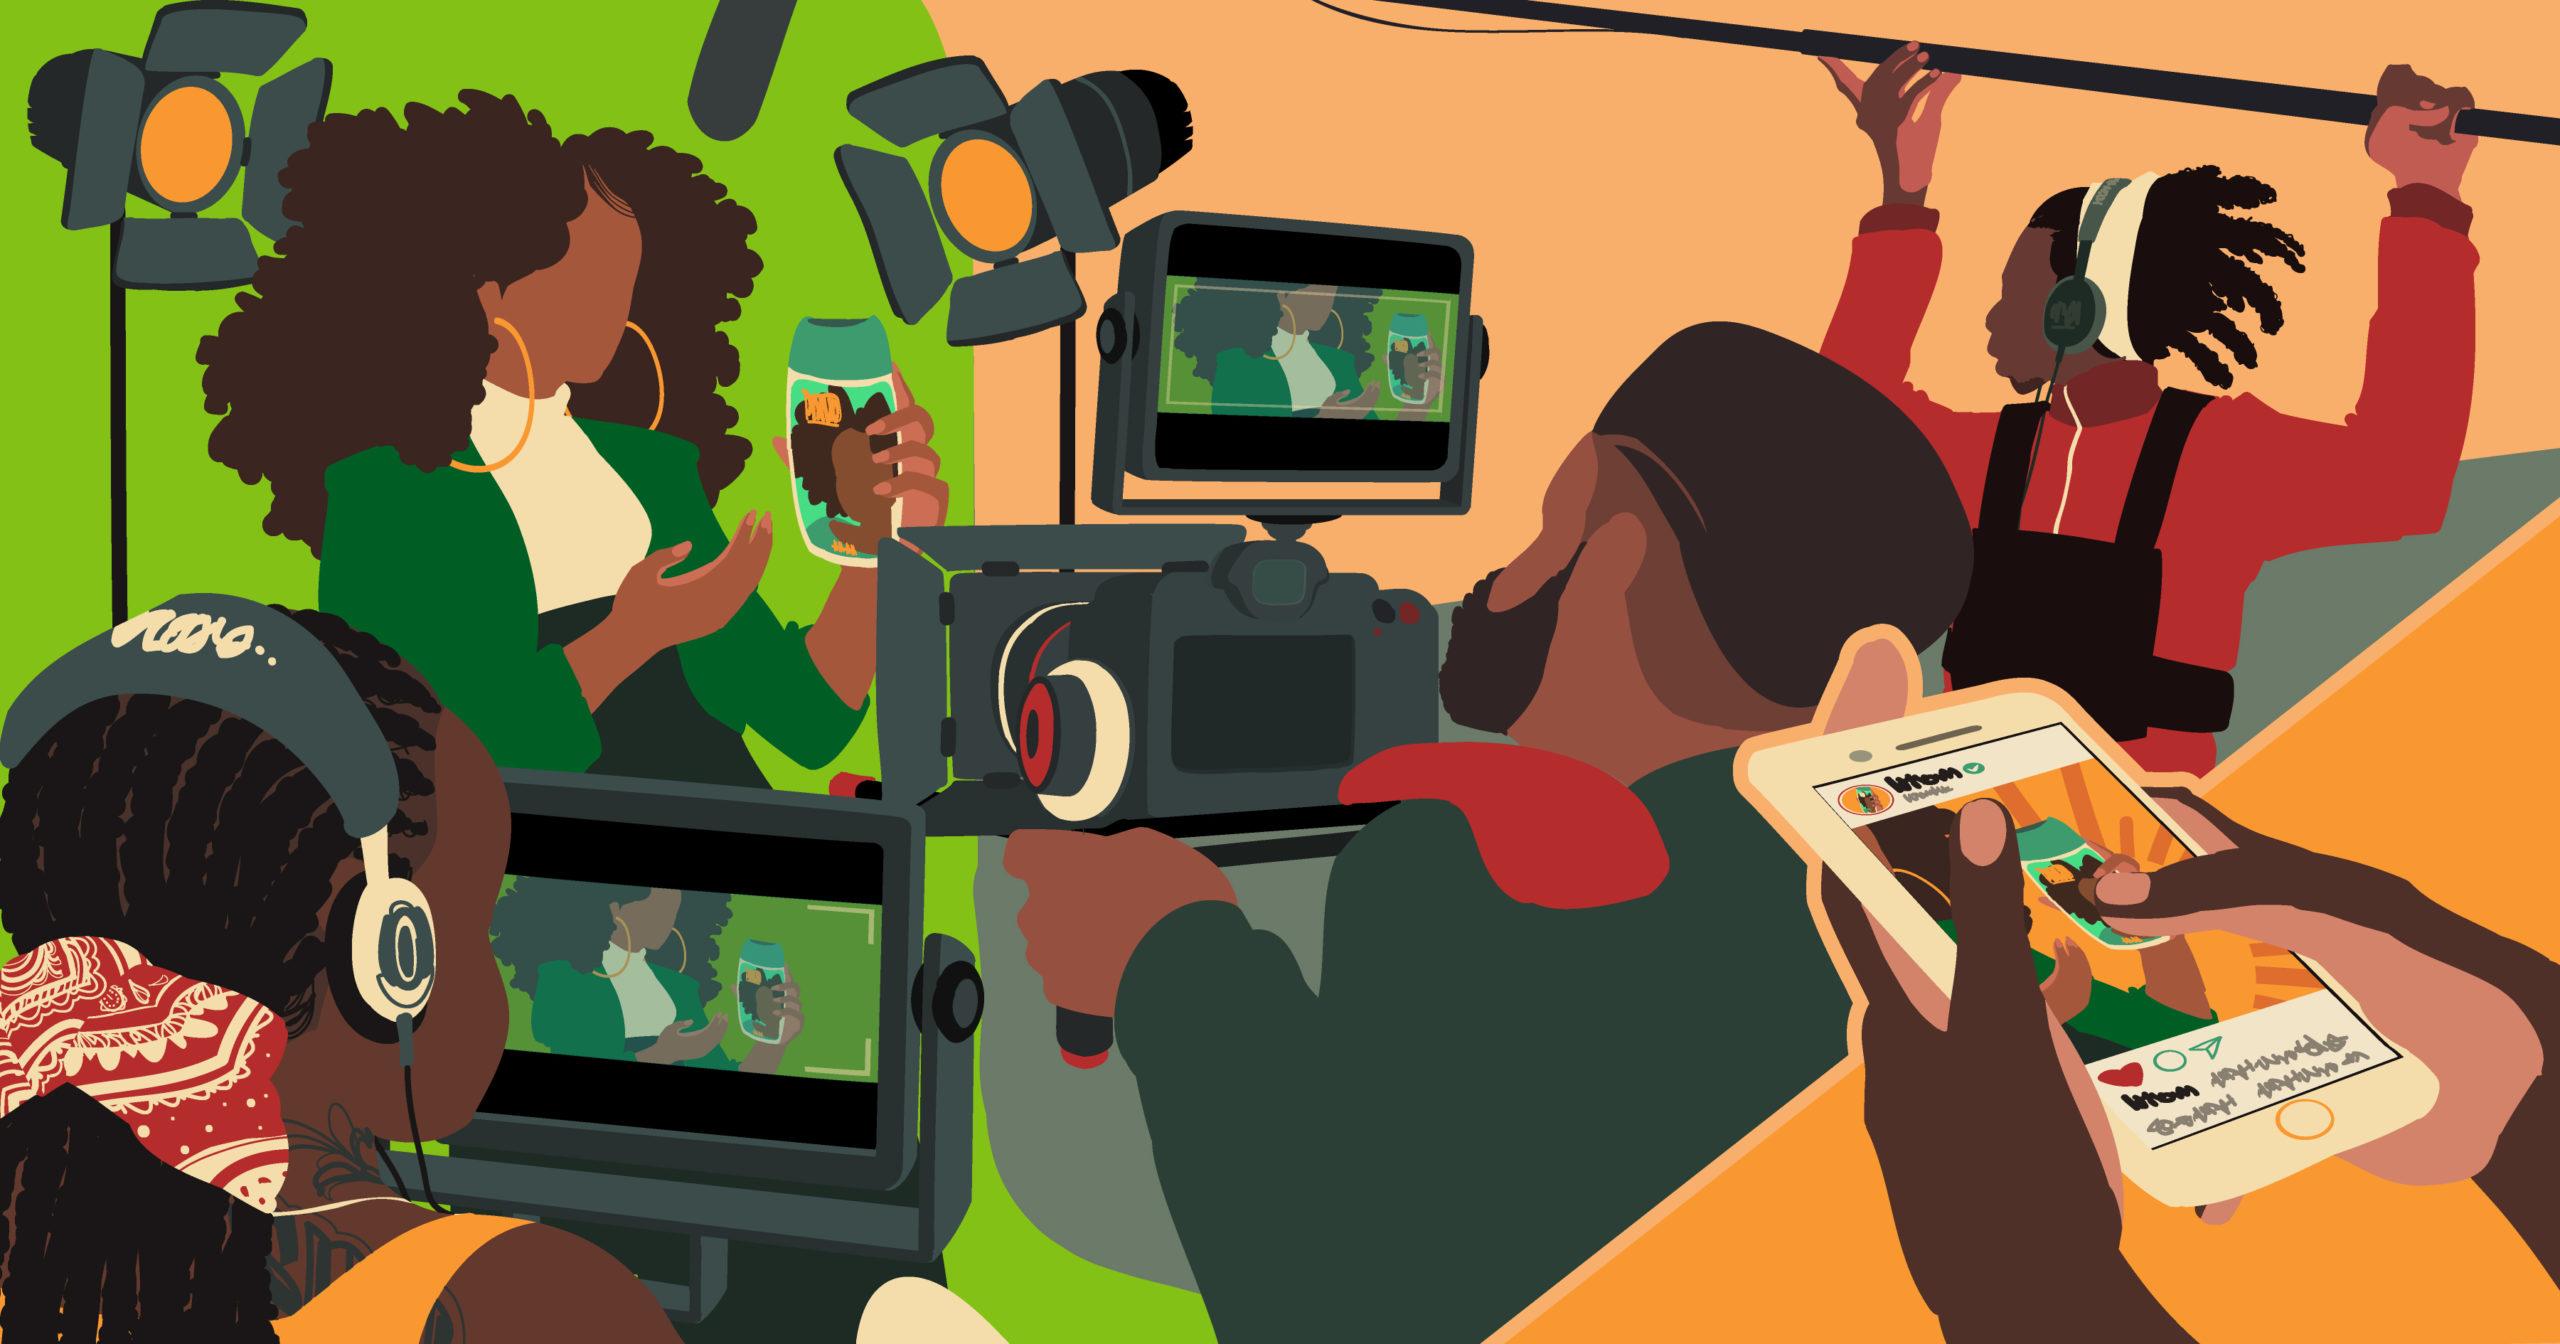 Ilustração de um set de filmagem mostrando um grupo de profissionais negros produzindo uma peça publicitária, feita para Adweek.